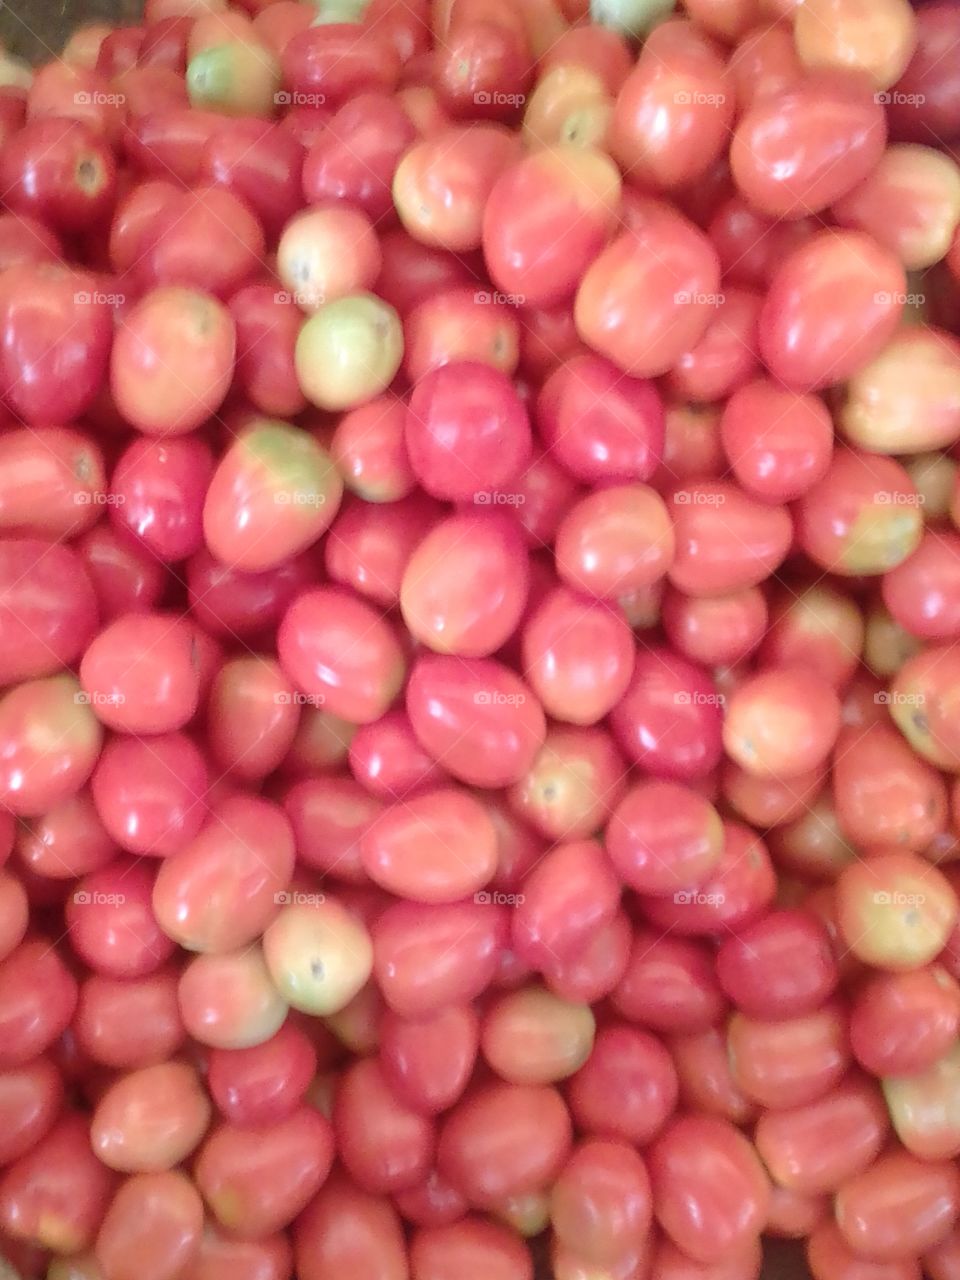 Sri Lankan Tomatoes 🍅 🍅 🍅 🍅 ..